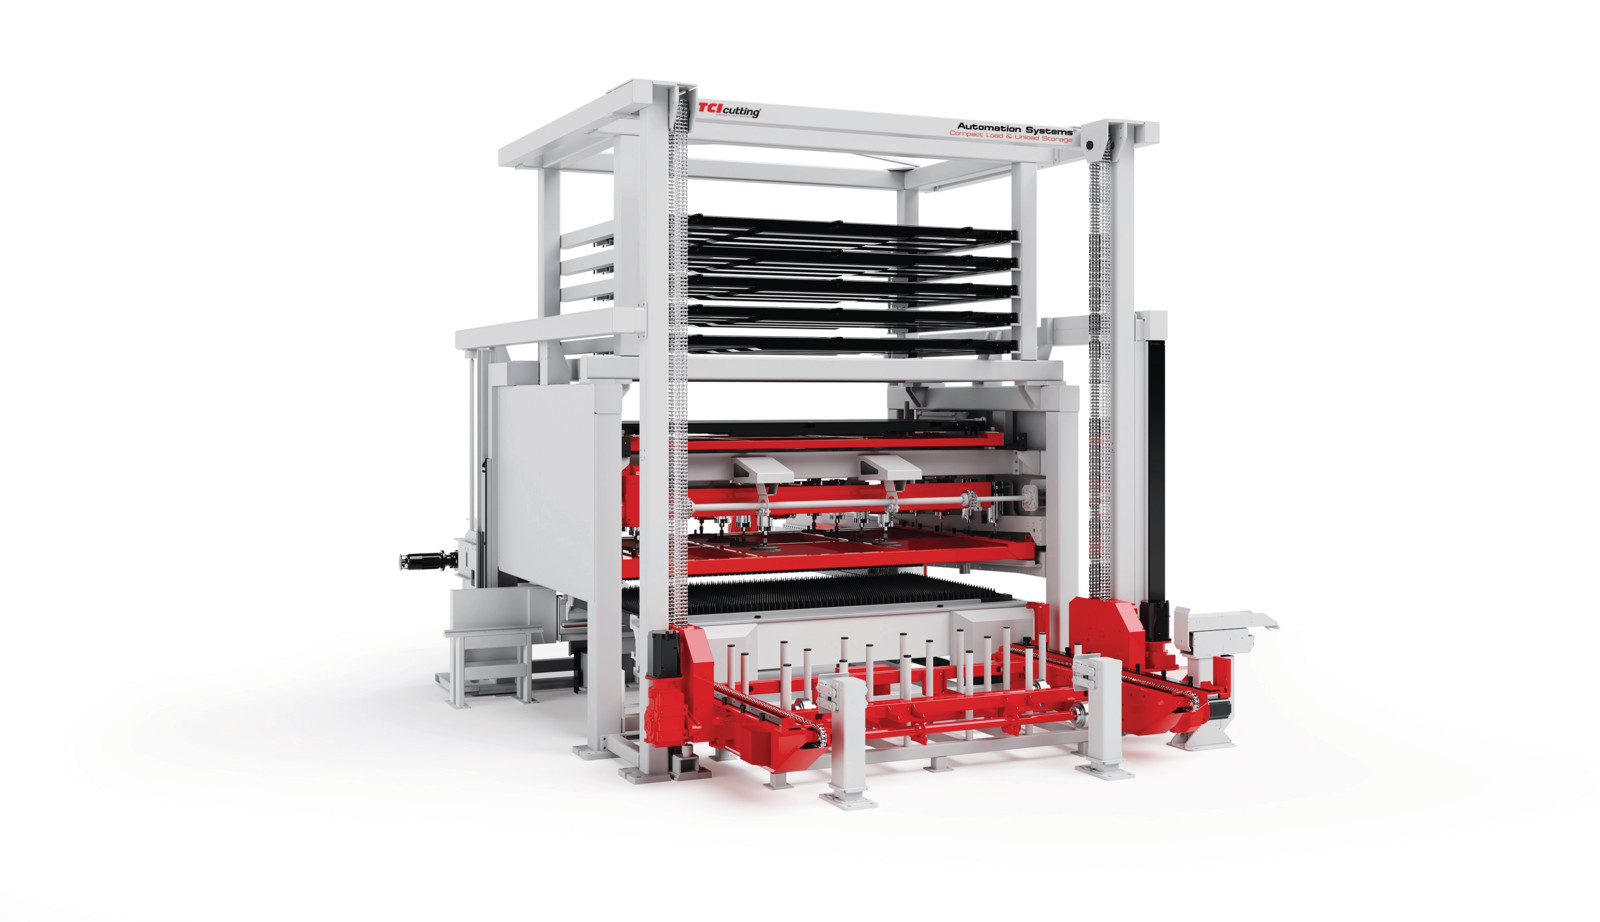 Der sogenannte Automation Systems Compact Load & Unload Storage kombiniert die Automatisierung des Be- und Entladens sowie der Lagerung. 